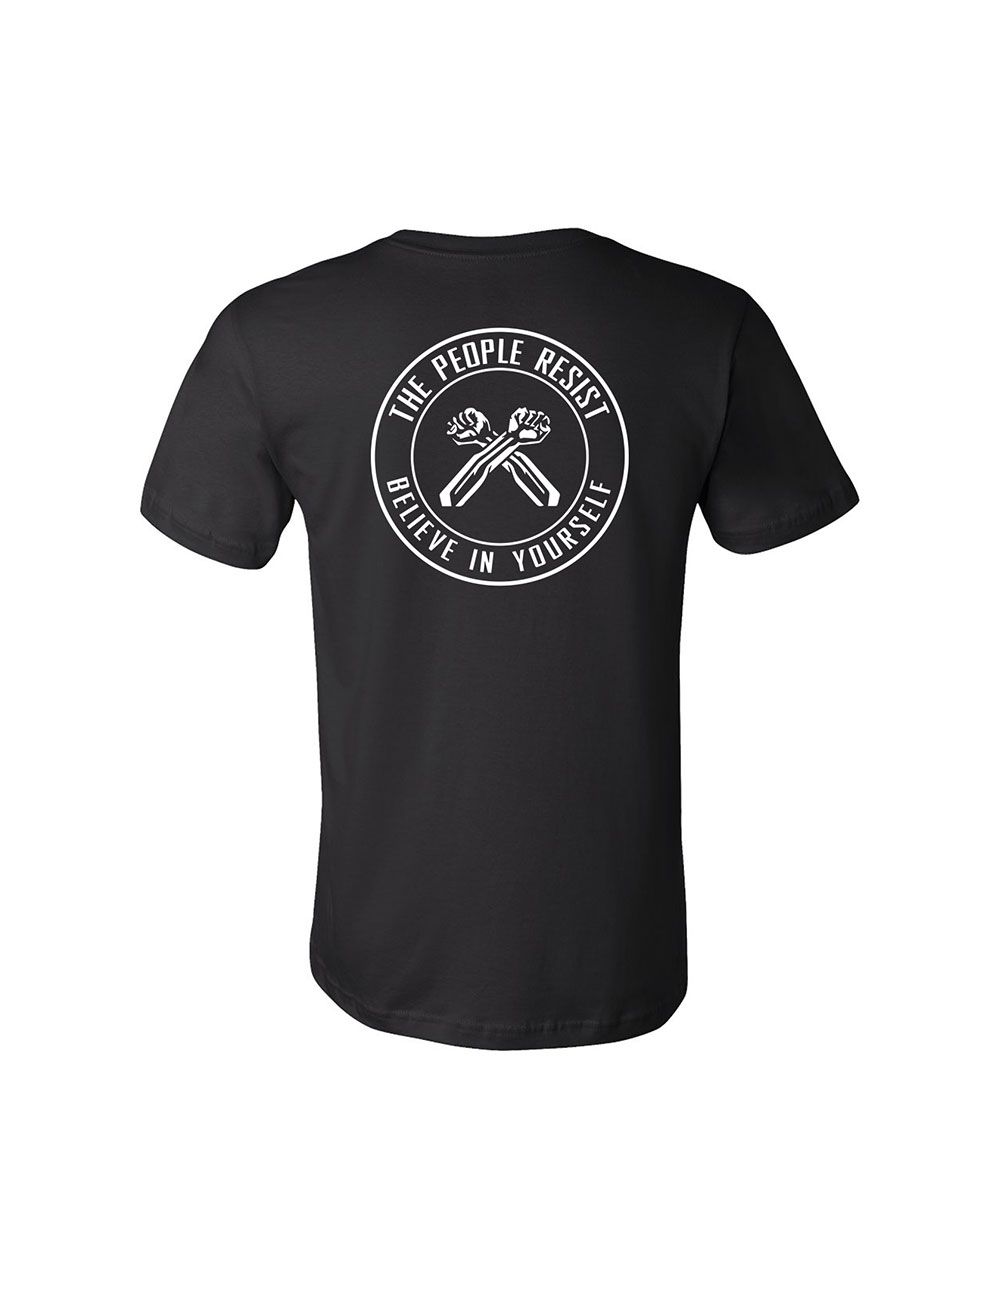 AFROPUNK - Merch - People Resist T-Shirt